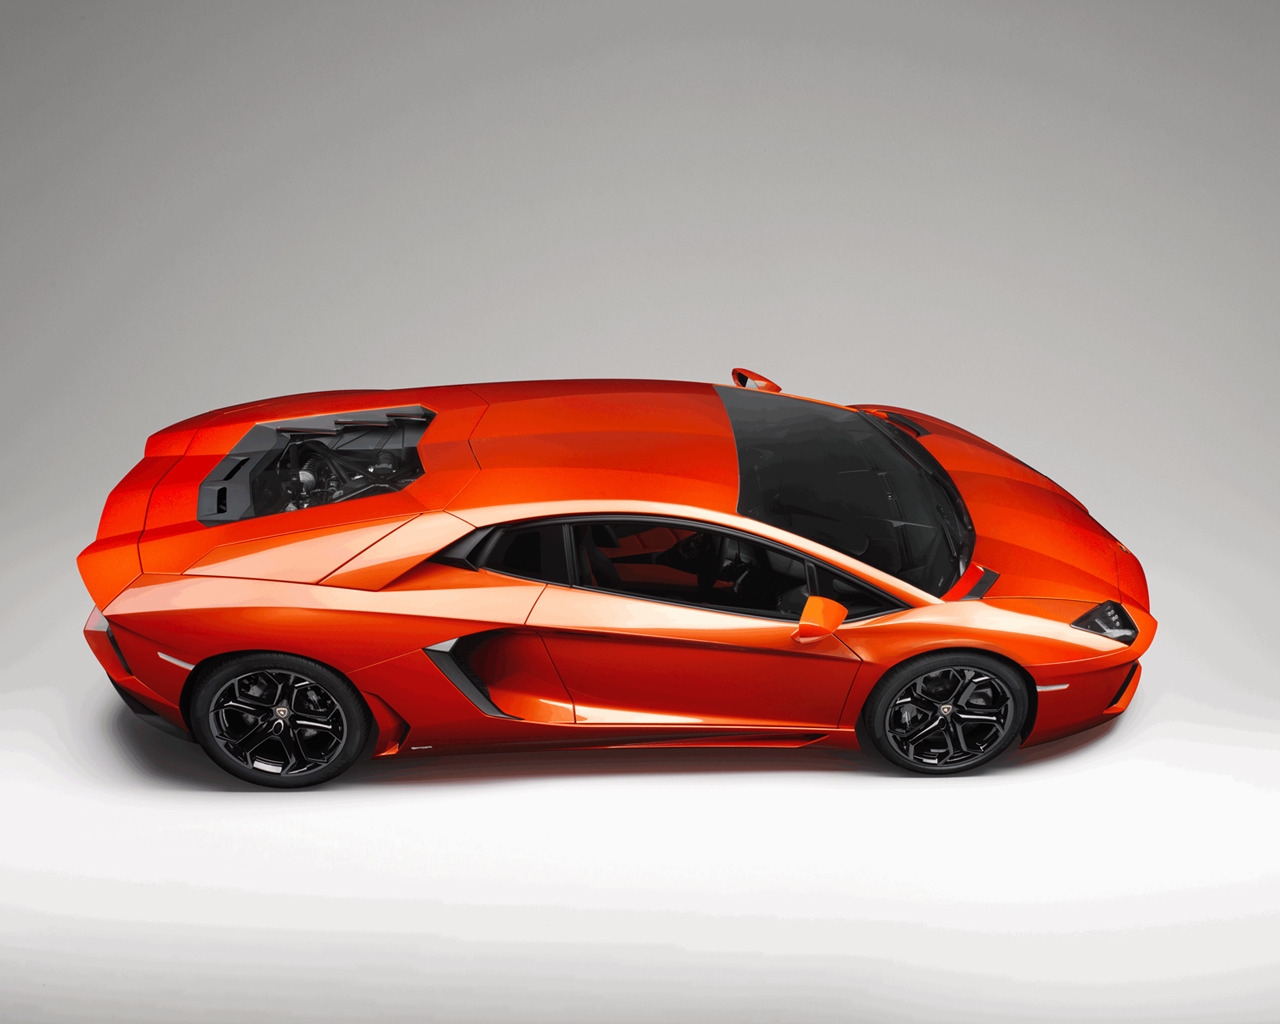 Lamborghini Aventador Studio for 1280 x 1024 resolution